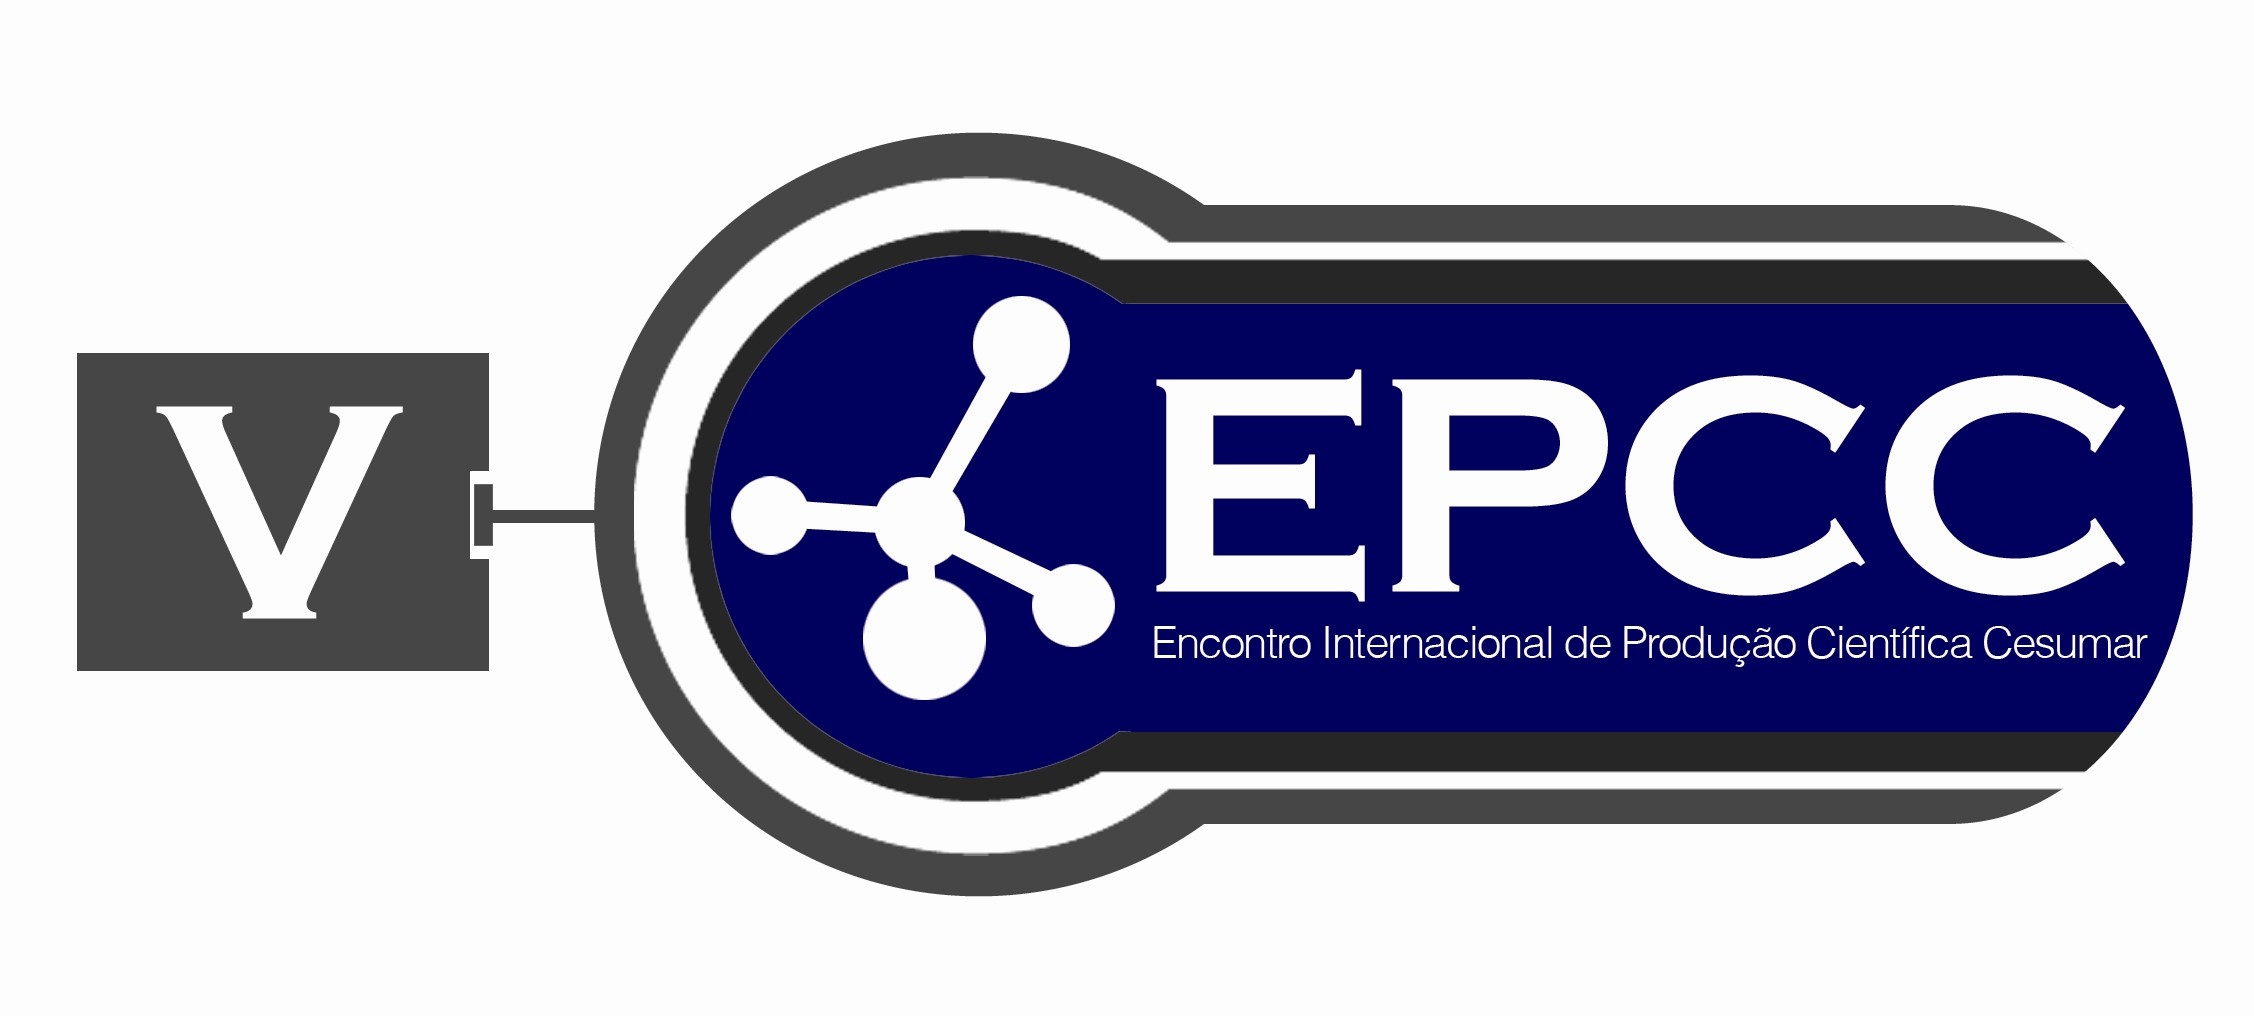 V EPCC Encontro Internacional de Produção Científica Cesumar 23 a 26 de outubro de 2007 ABORDAGEM INTERDISCIPLINAR DE CASO DE MEGACÓLON DE DOENÇA DE CHAGAS.